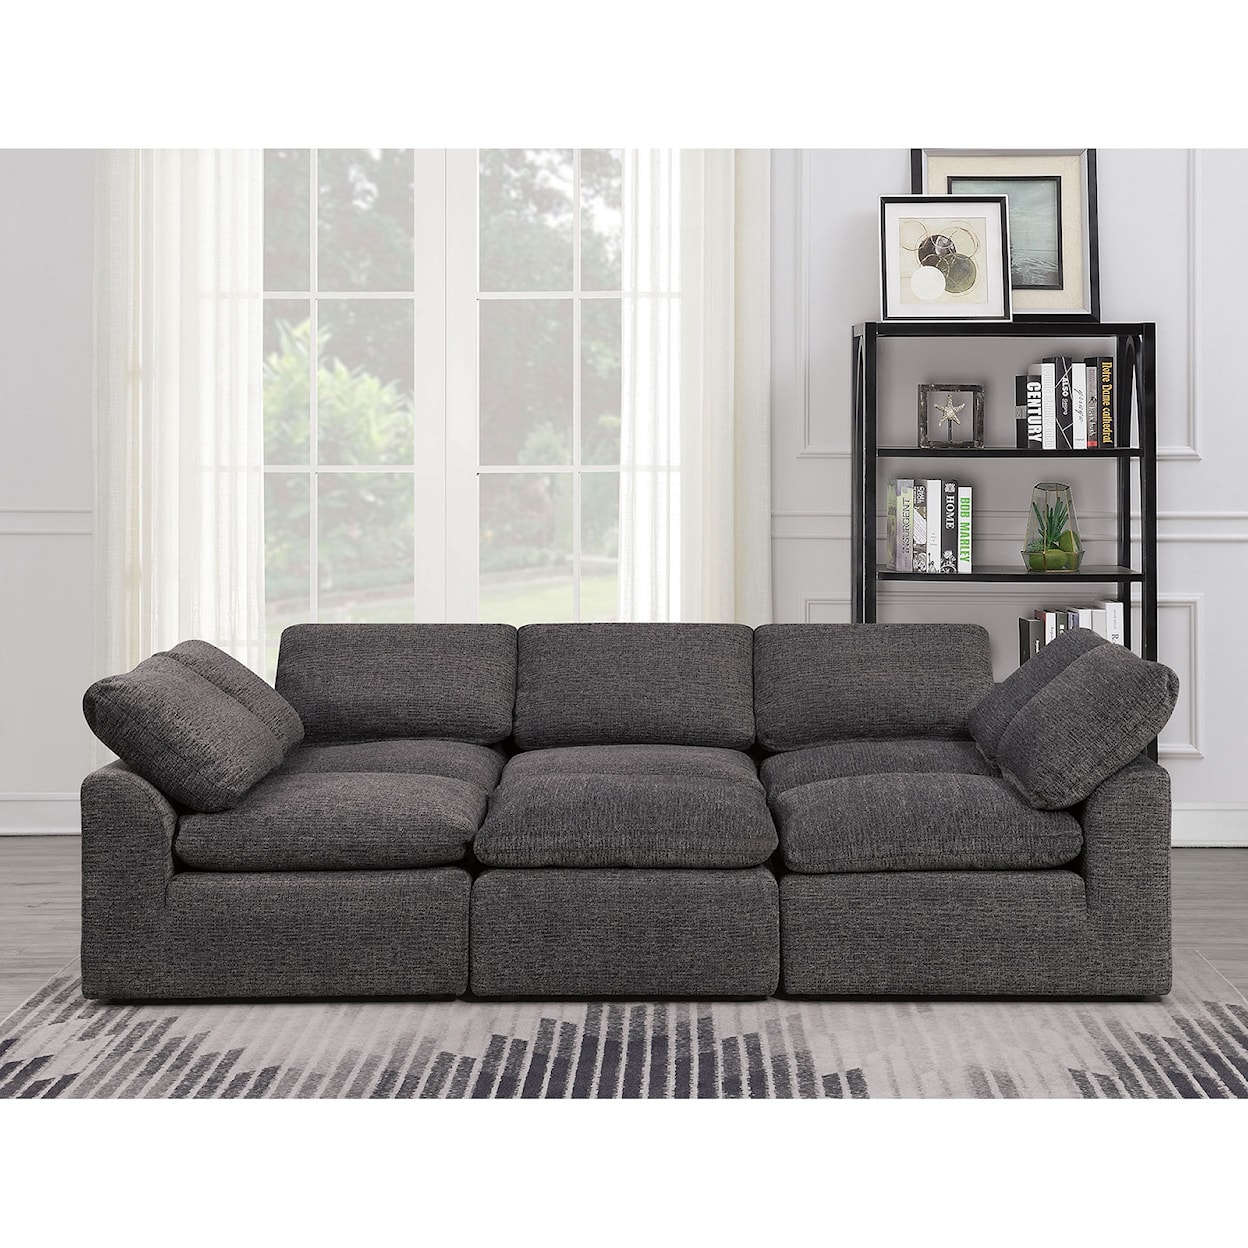 Furniture of America Joel Sleeper Sofa